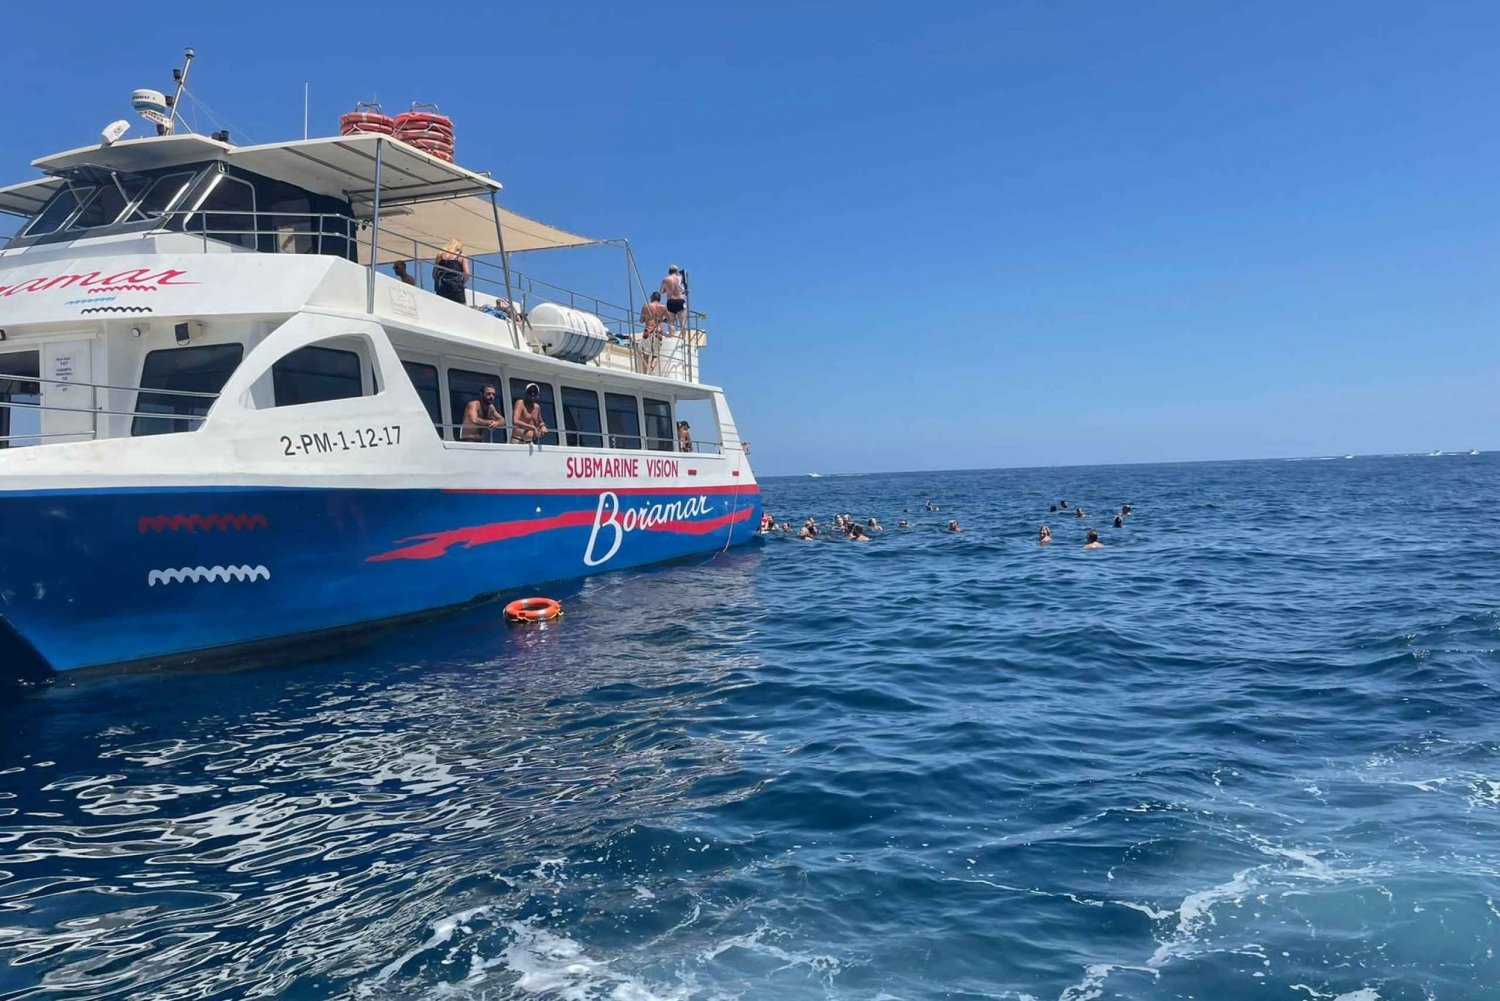 Javea: Gita in catamarano a motore sull'isola di Portitxol con paella